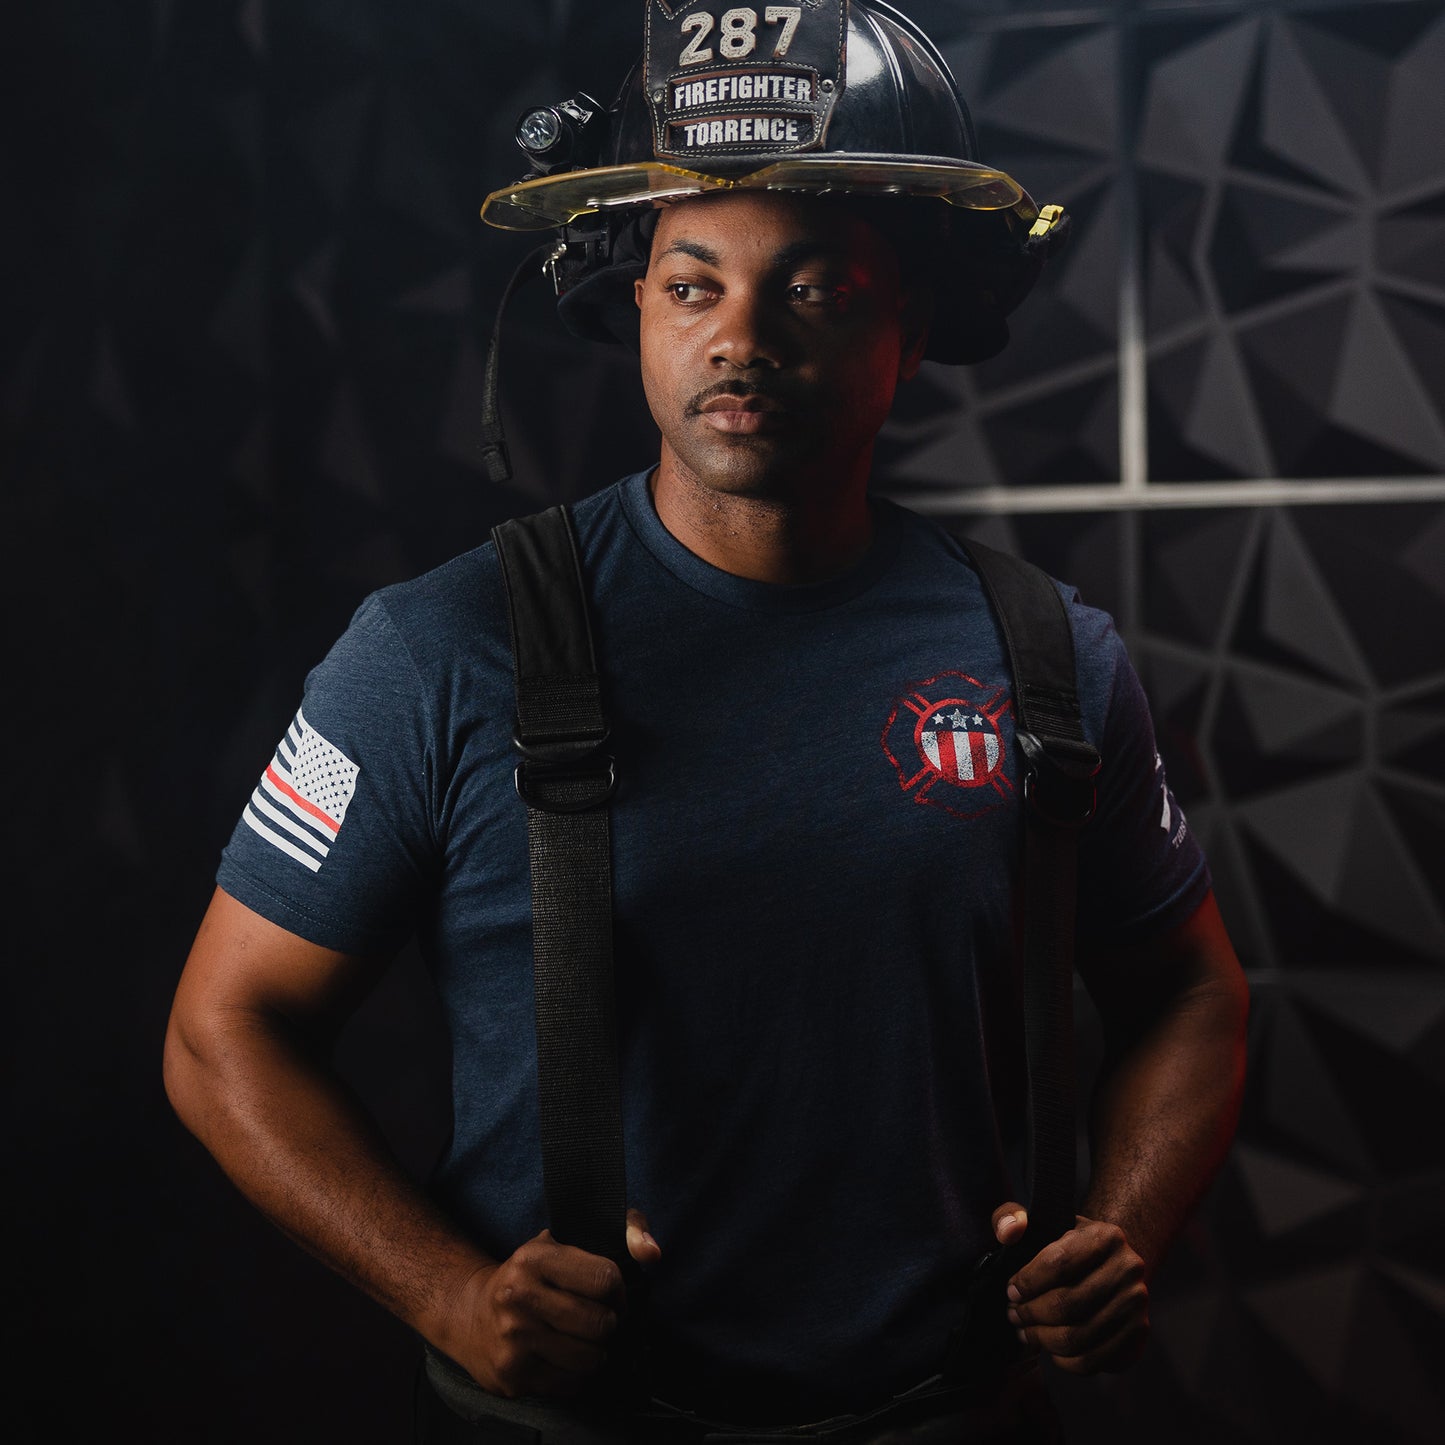 Firefighter Shirt